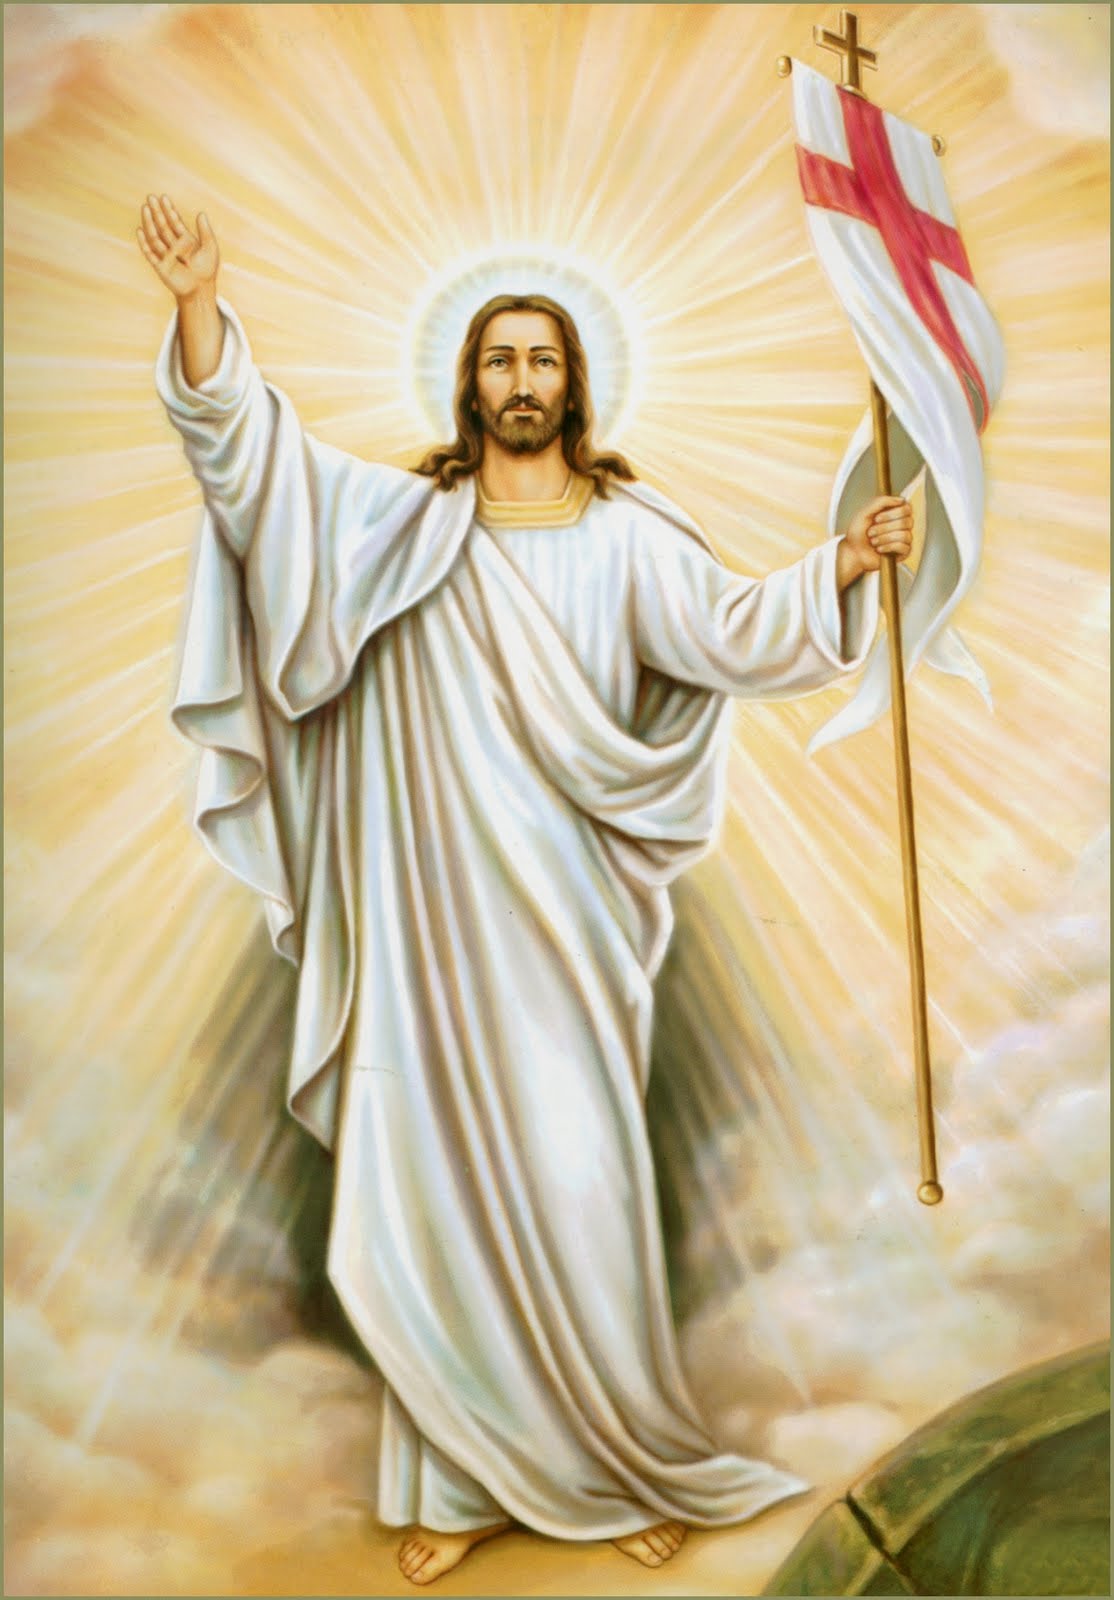 Jesus resurrection free image download